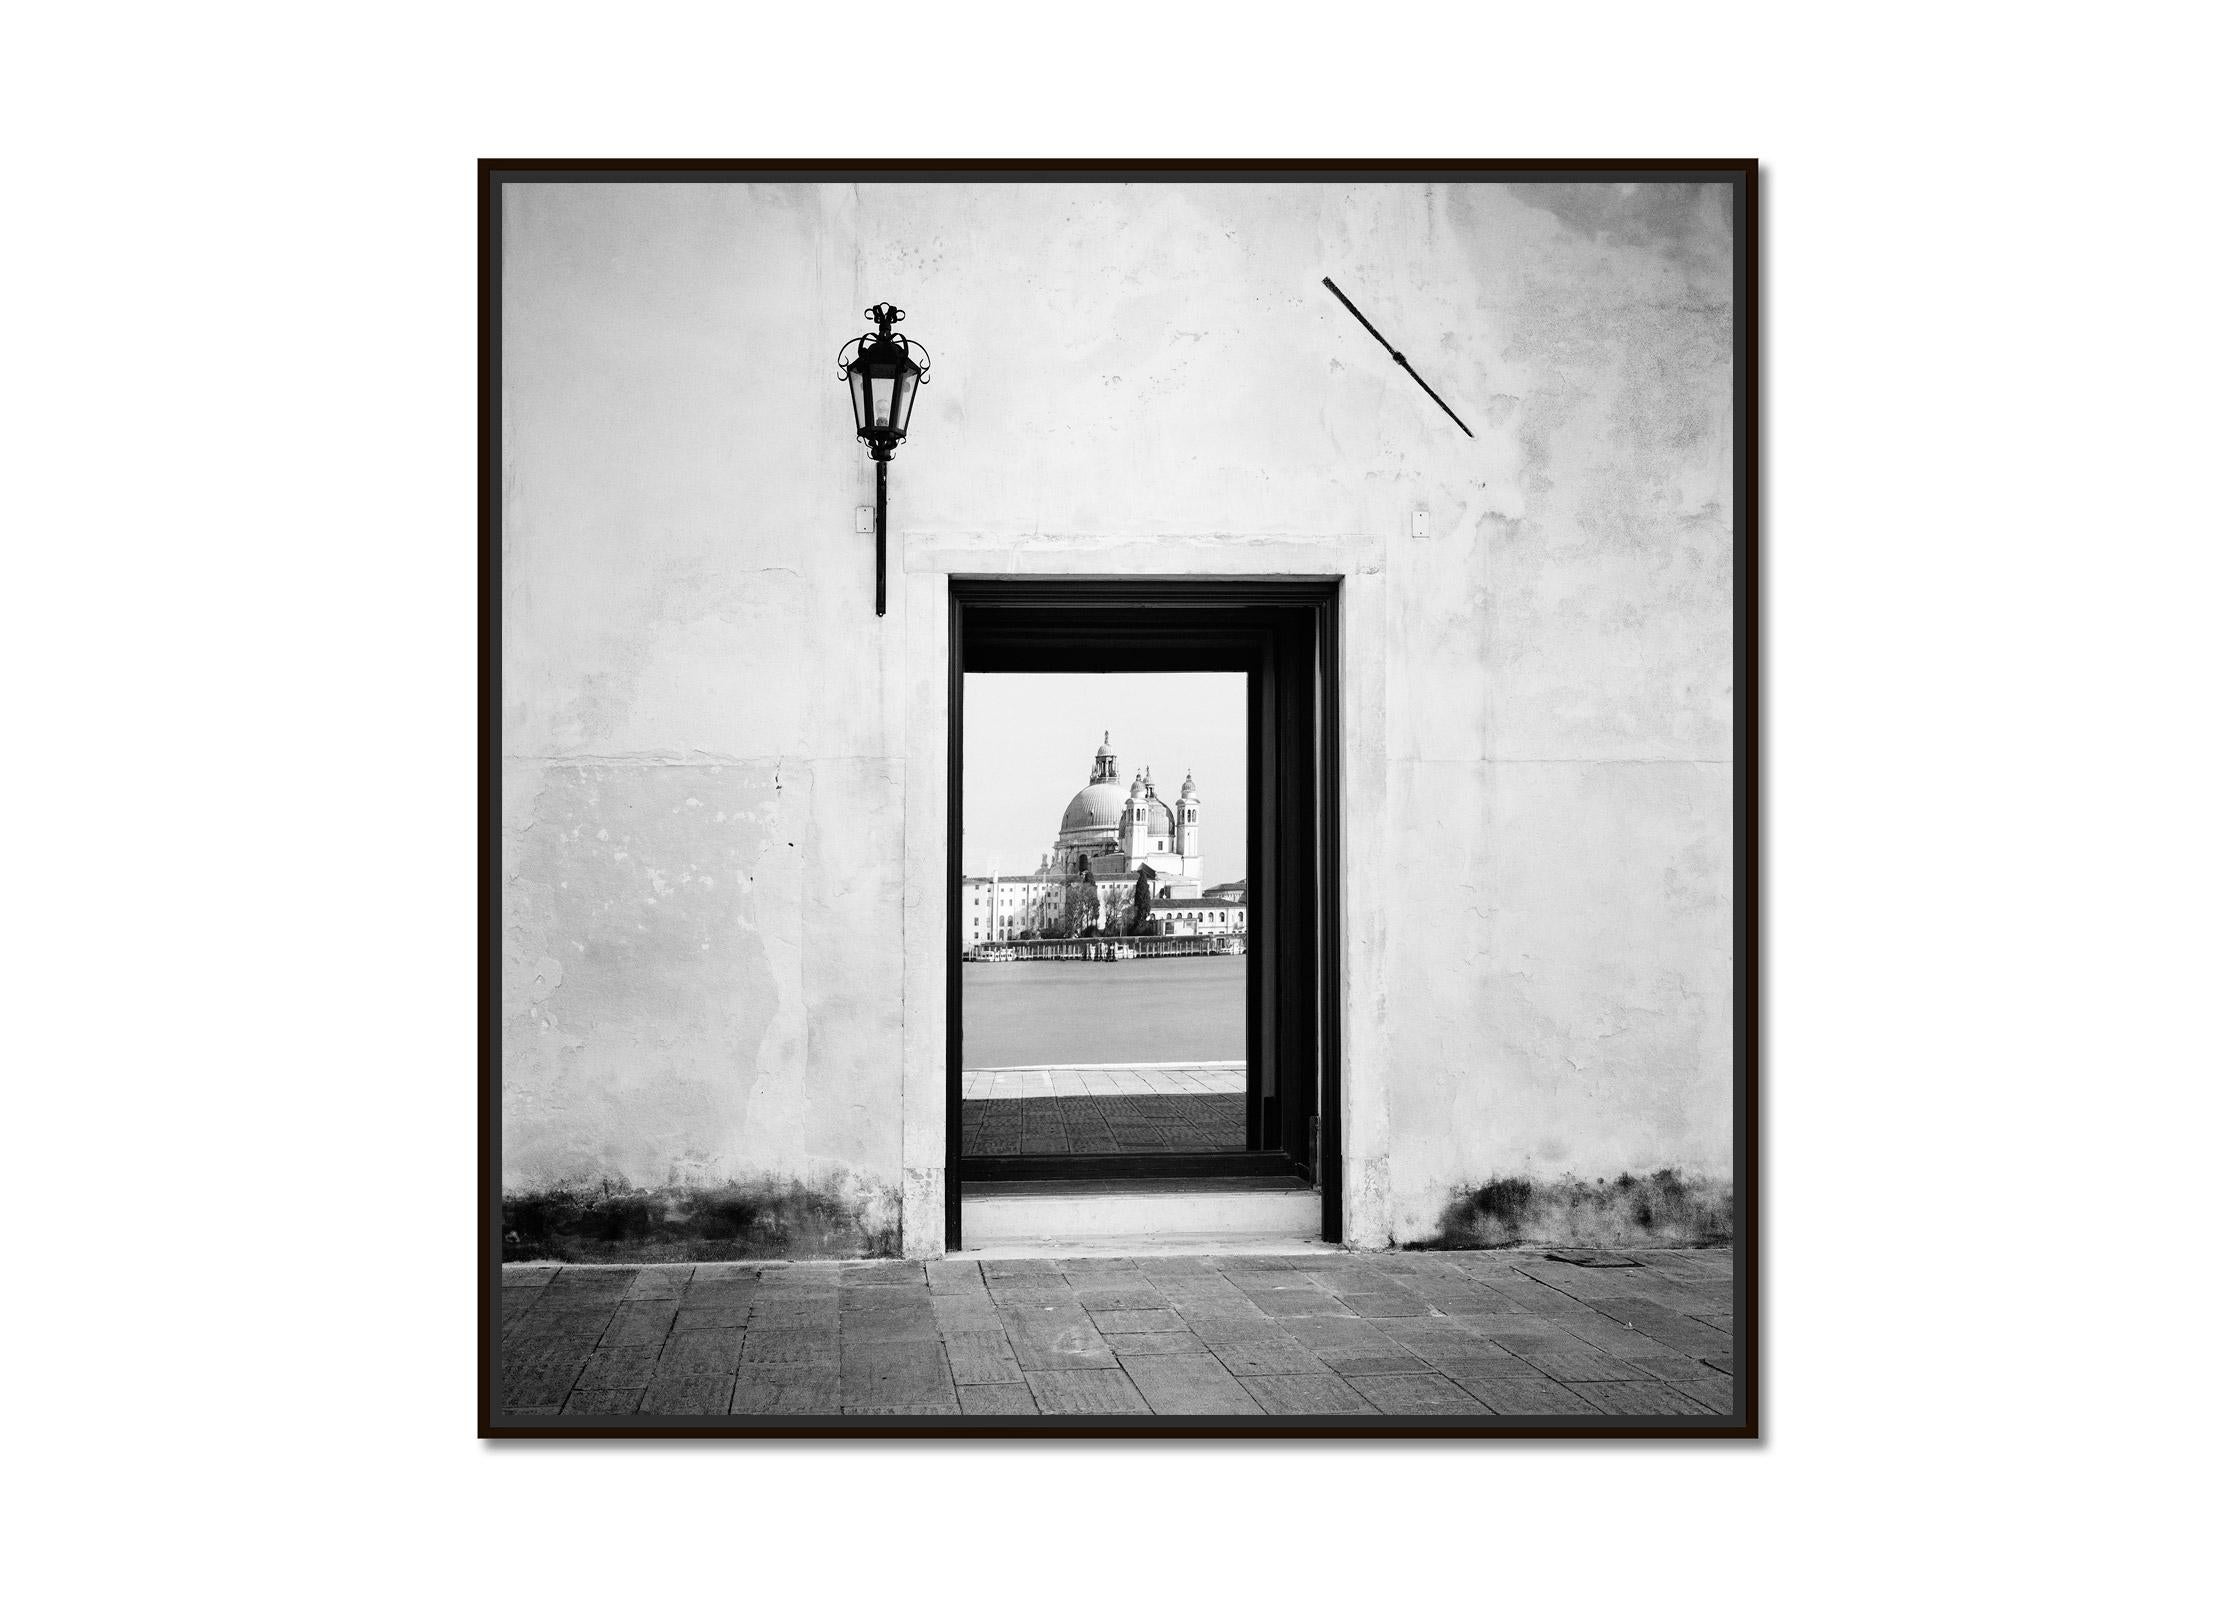 Reflection, Venedig, Italien, Schwarz-Weiß-Fotografiedruck der bildenden Kunst – Photograph von Gerald Berghammer